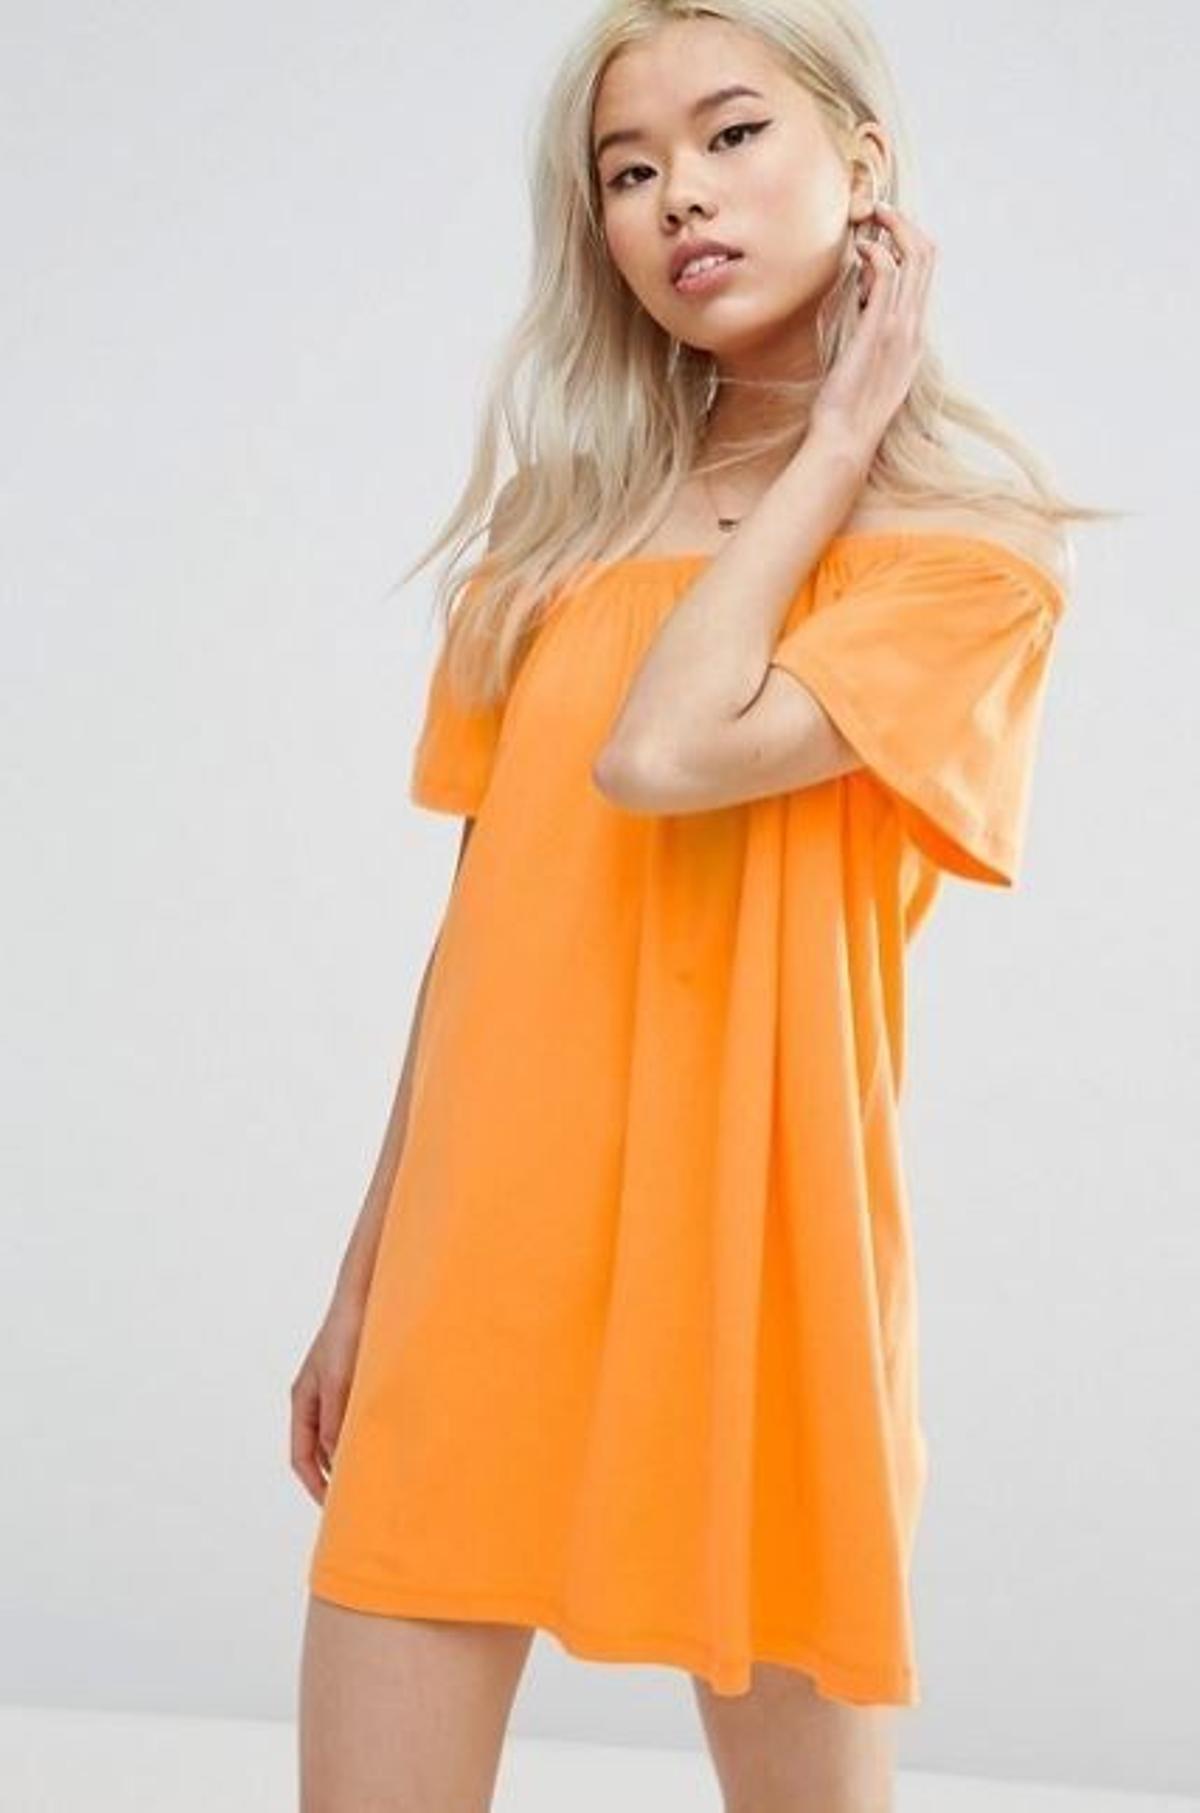 Vas a querer un minidress naranja, palabra de Vanessa Hudgens